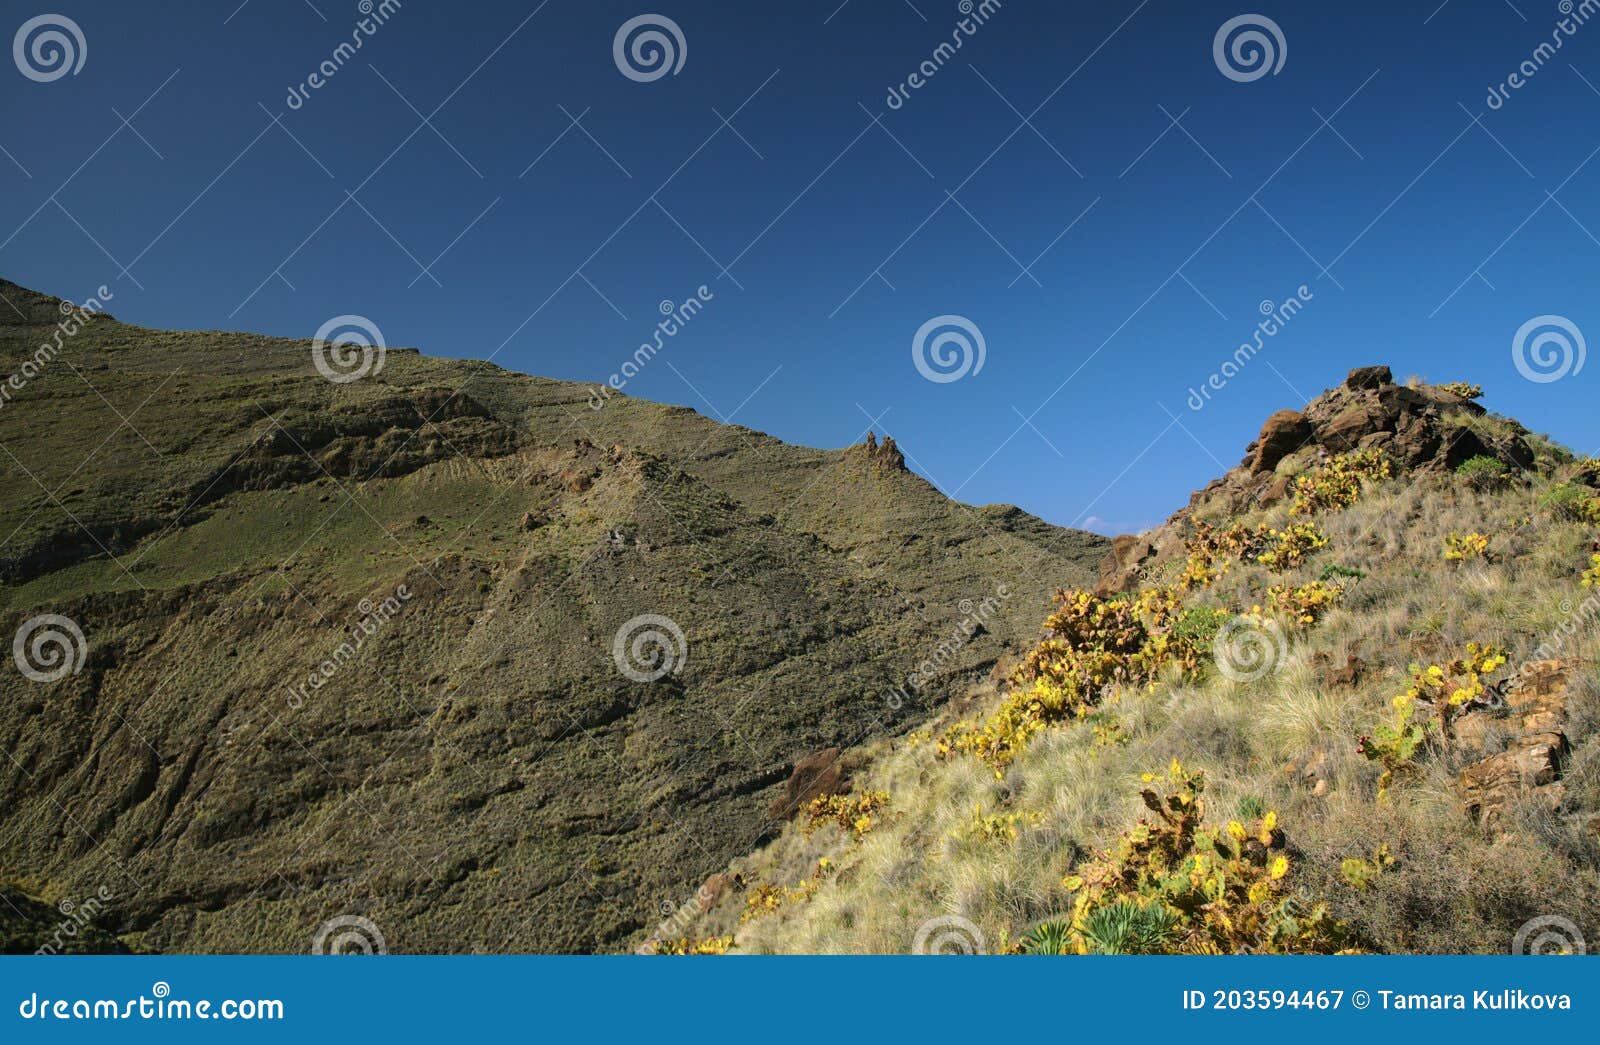 gran canaria, volcanic landscape of mountain valley barranco oscuro